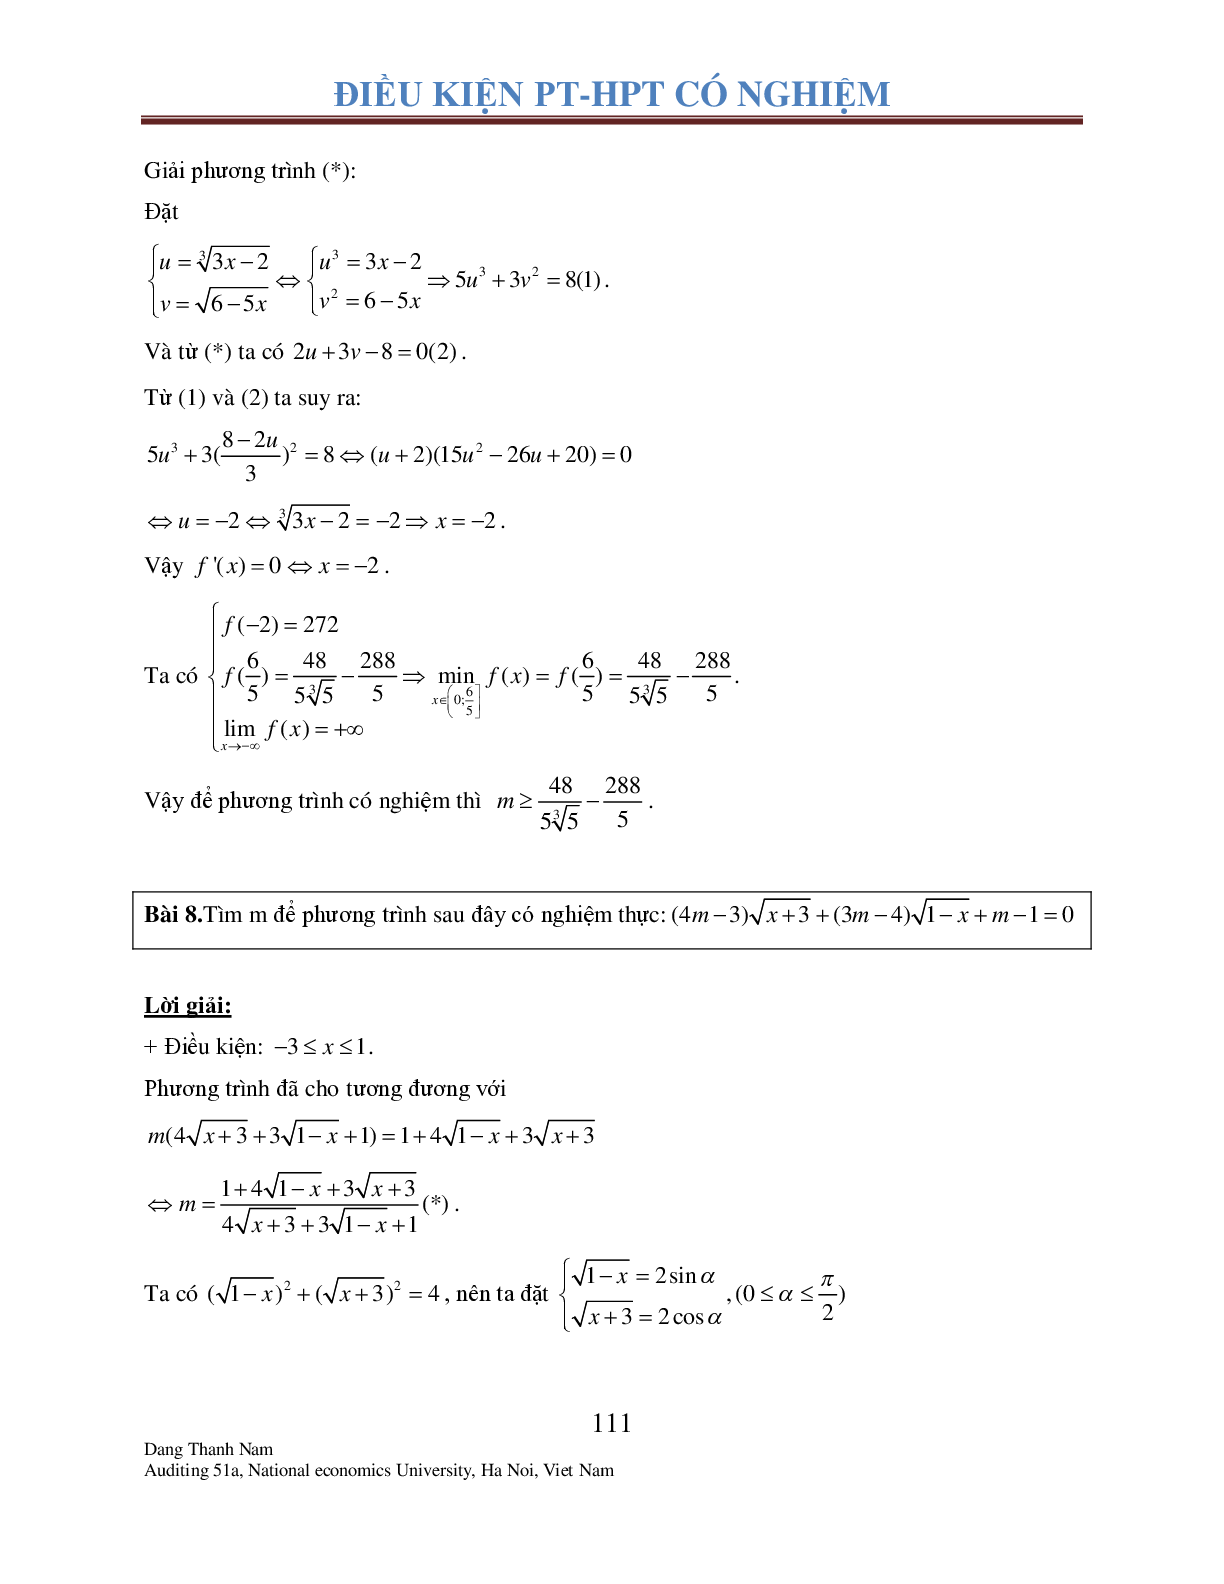 Chuyên đề 2: Tìm điều kiện để Phương trình – Hệ phương trình có nghiệm (trang 10)